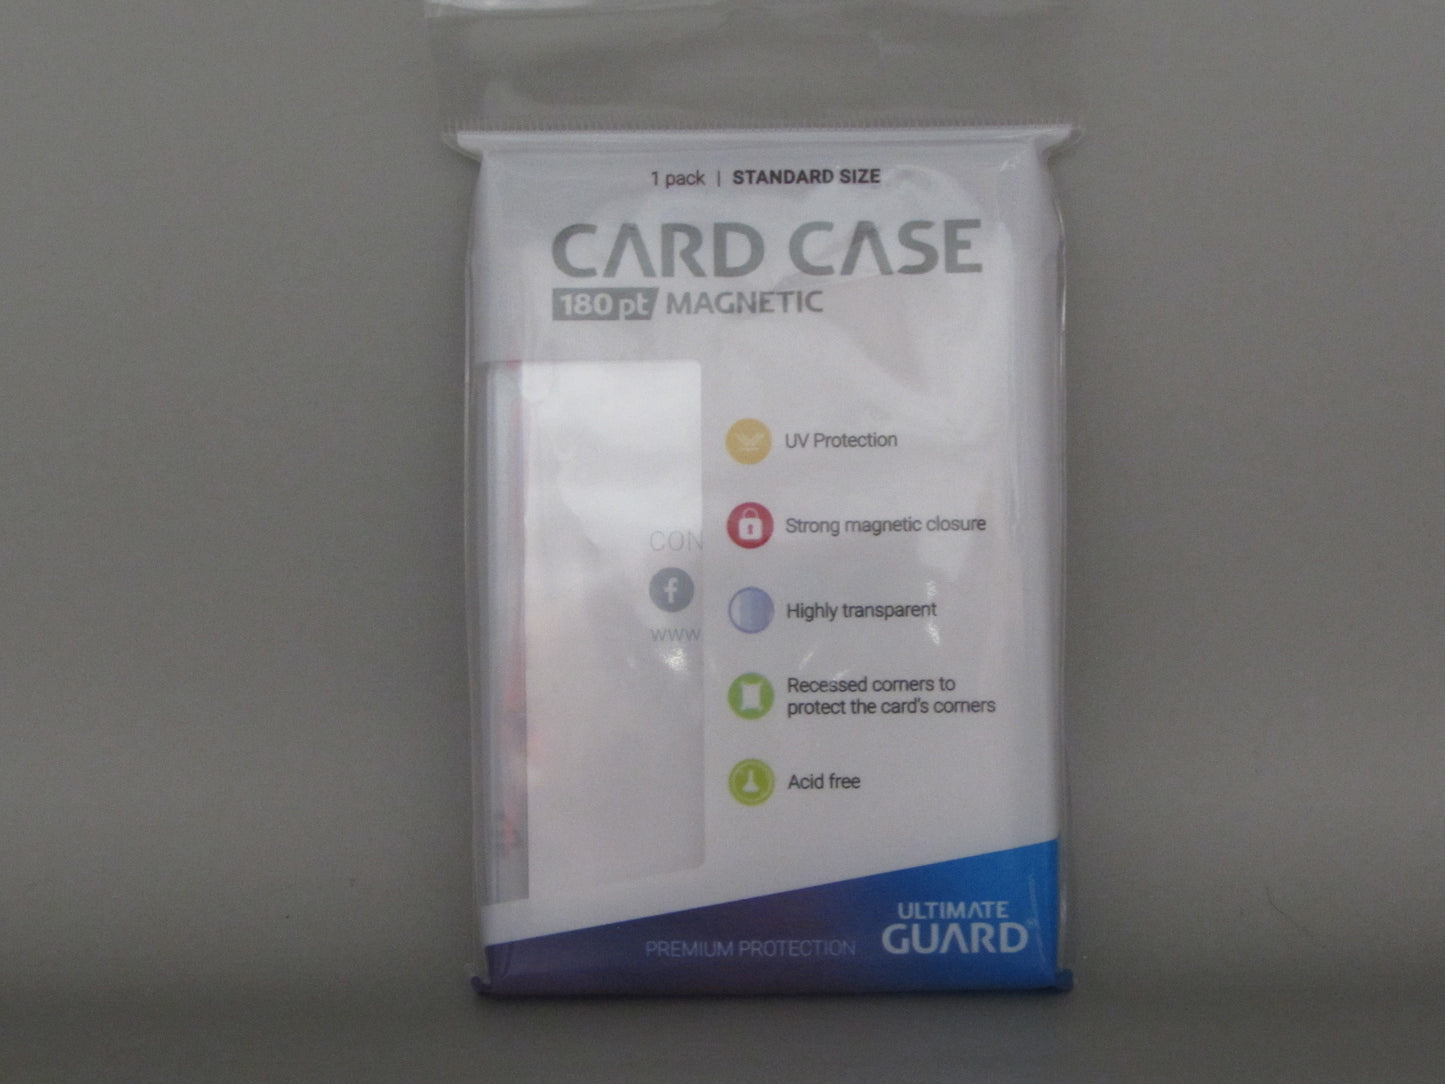 Ultimate gaurd 180pt card case magnetic